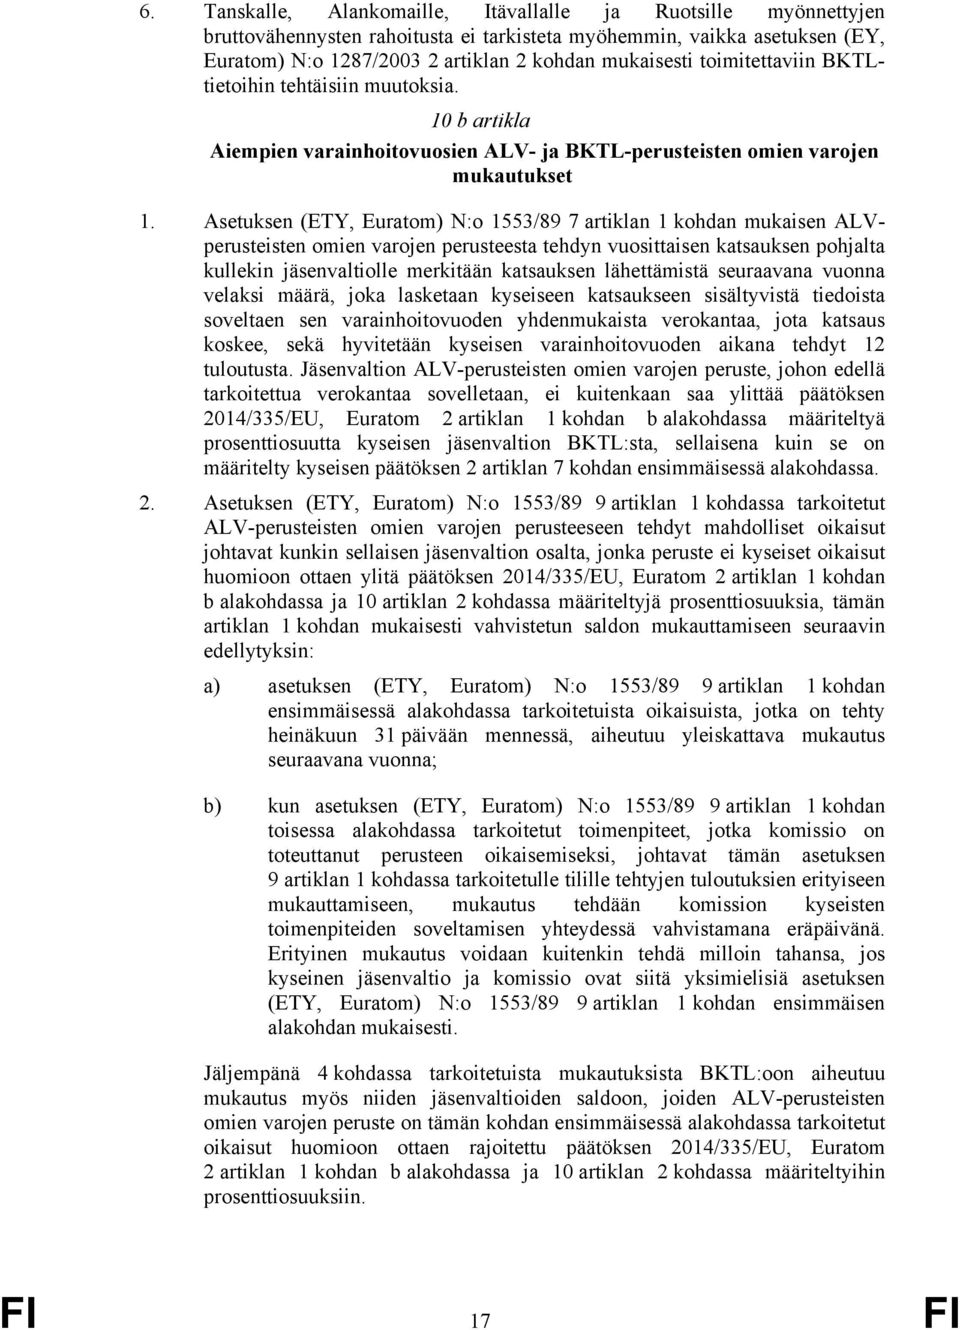 Asetuksen (ETY, Euratom) N:o 1553/89 7 artiklan 1 kohdan mukaisen ALVperusteisten omien varojen perusteesta tehdyn vuosittaisen katsauksen pohjalta kullekin jäsenvaltiolle merkitään katsauksen